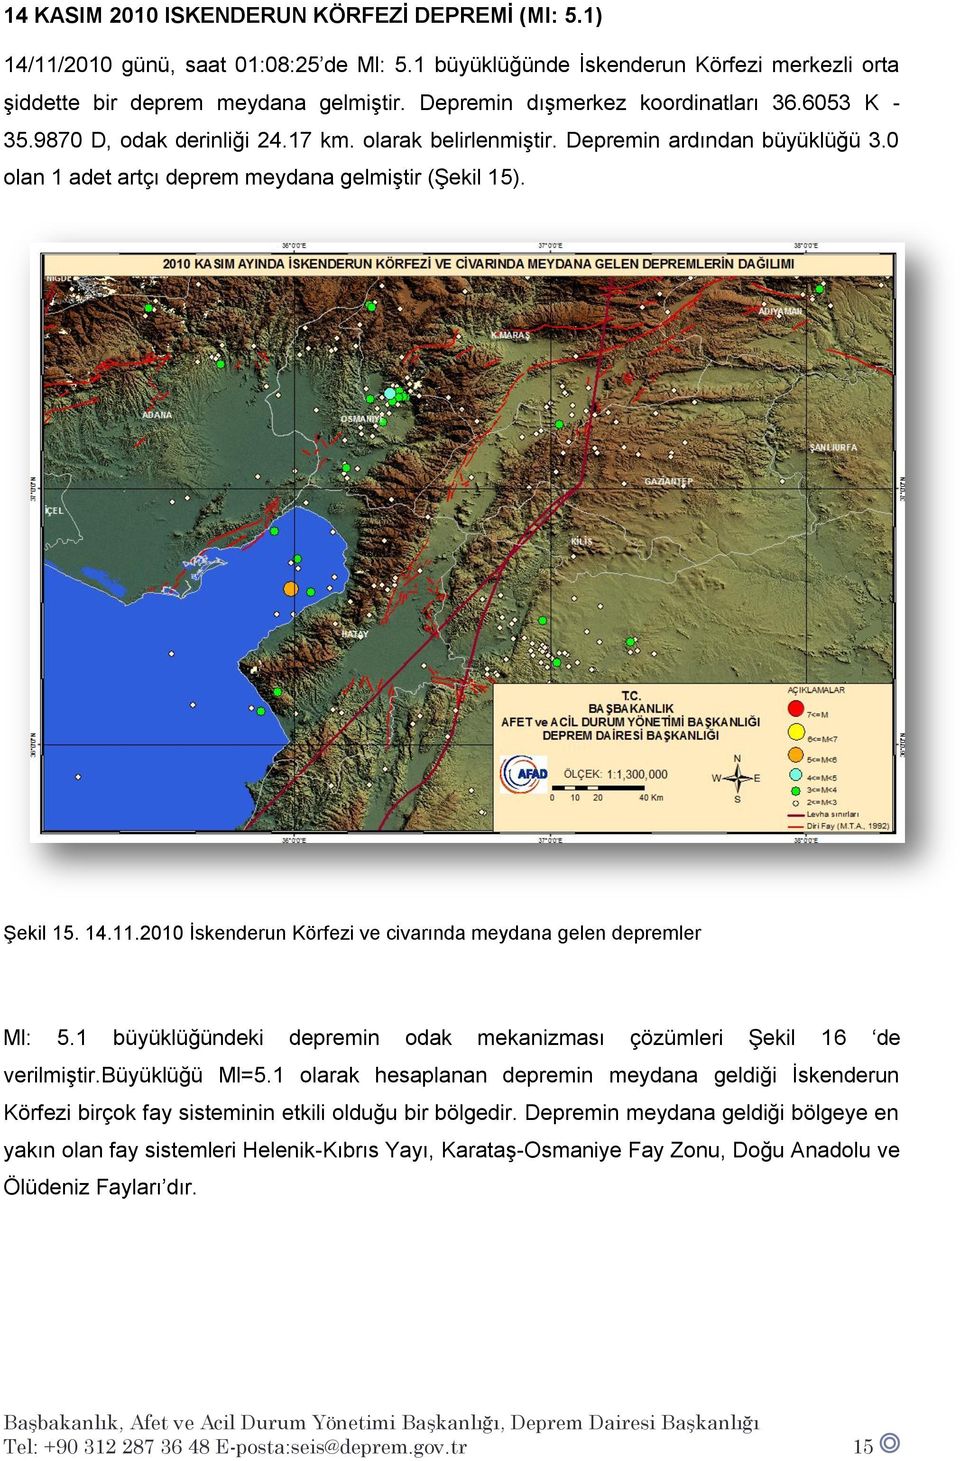 14.11.2010 İskenderun Körfezi ve civarında meydana gelen depremler Ml: 5.1 büyüklüğündeki depremin odak mekanizması çözümleri Şekil 16 de verilmiştir.büyüklüğü Ml=5.